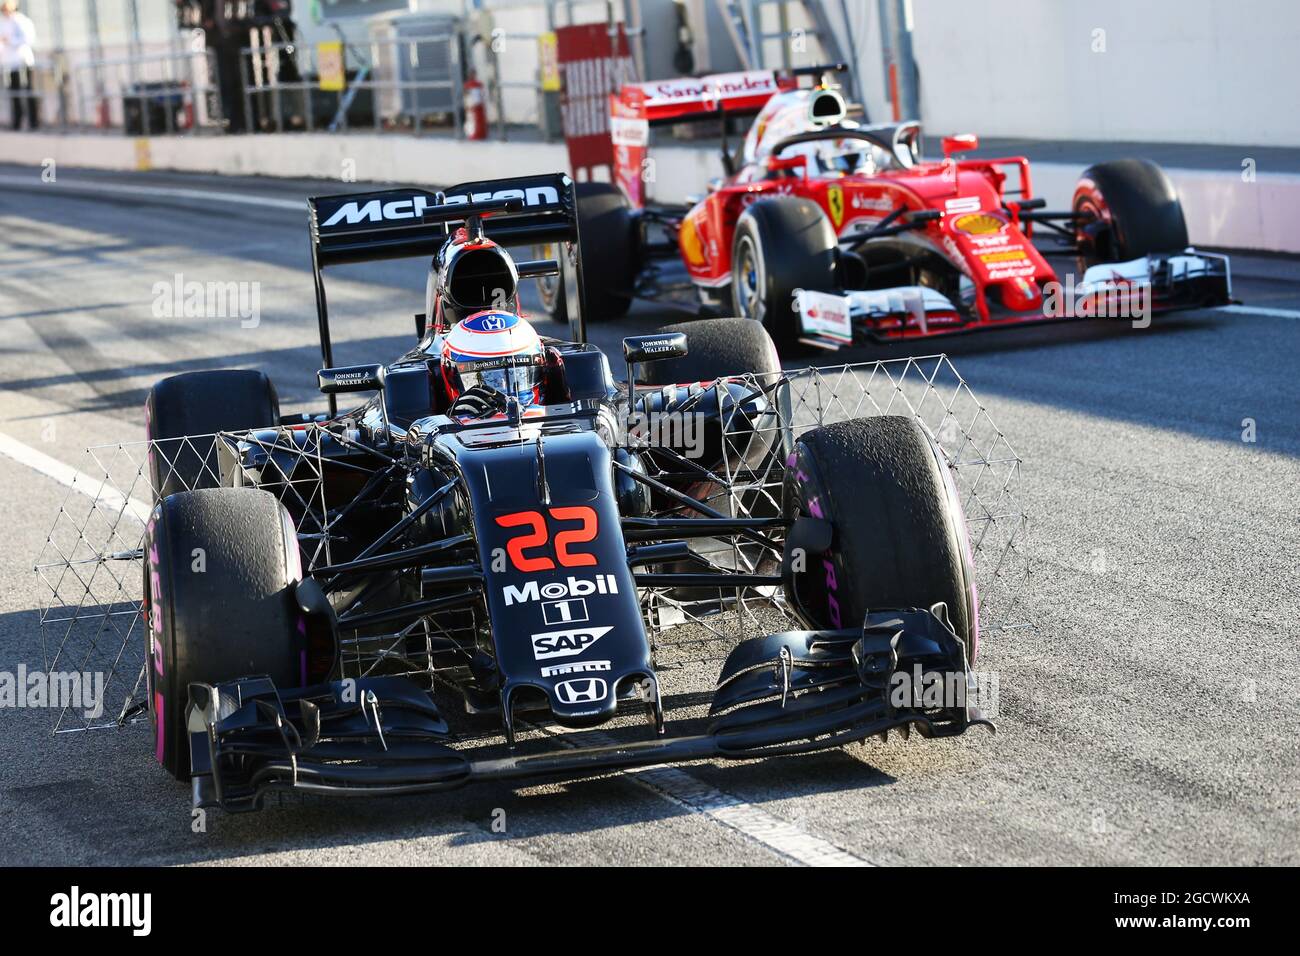 Jenson BUTTON (GBR) McLaren MP4-31 avec capteurs comme Sebastian Vettel (GER) Ferrari SF16-H la couverture du poste de pilotage Halo quitte les fosses. Test de Formule 1, jour 4, vendredi 4 mars 2016. Barcelone, Espagne. Banque D'Images